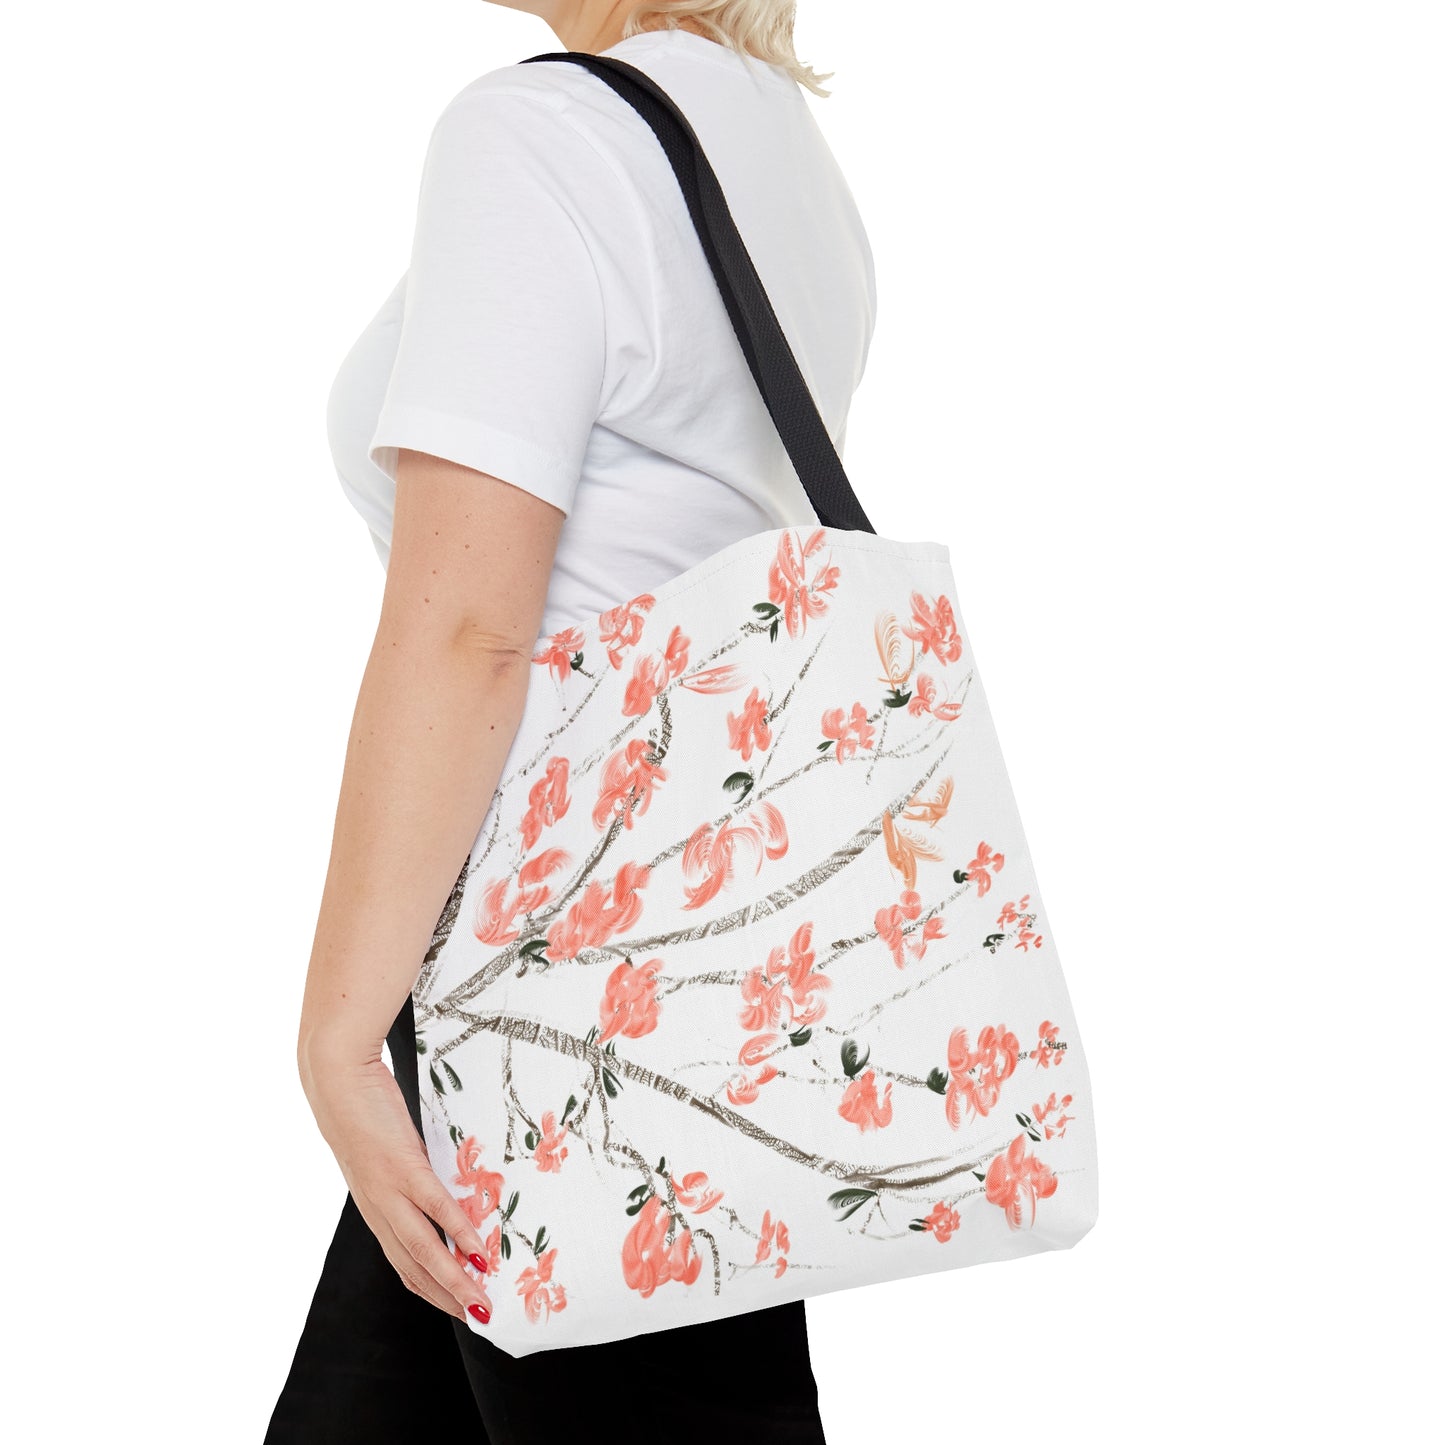 Delicate cherry blossom art Tote Bag